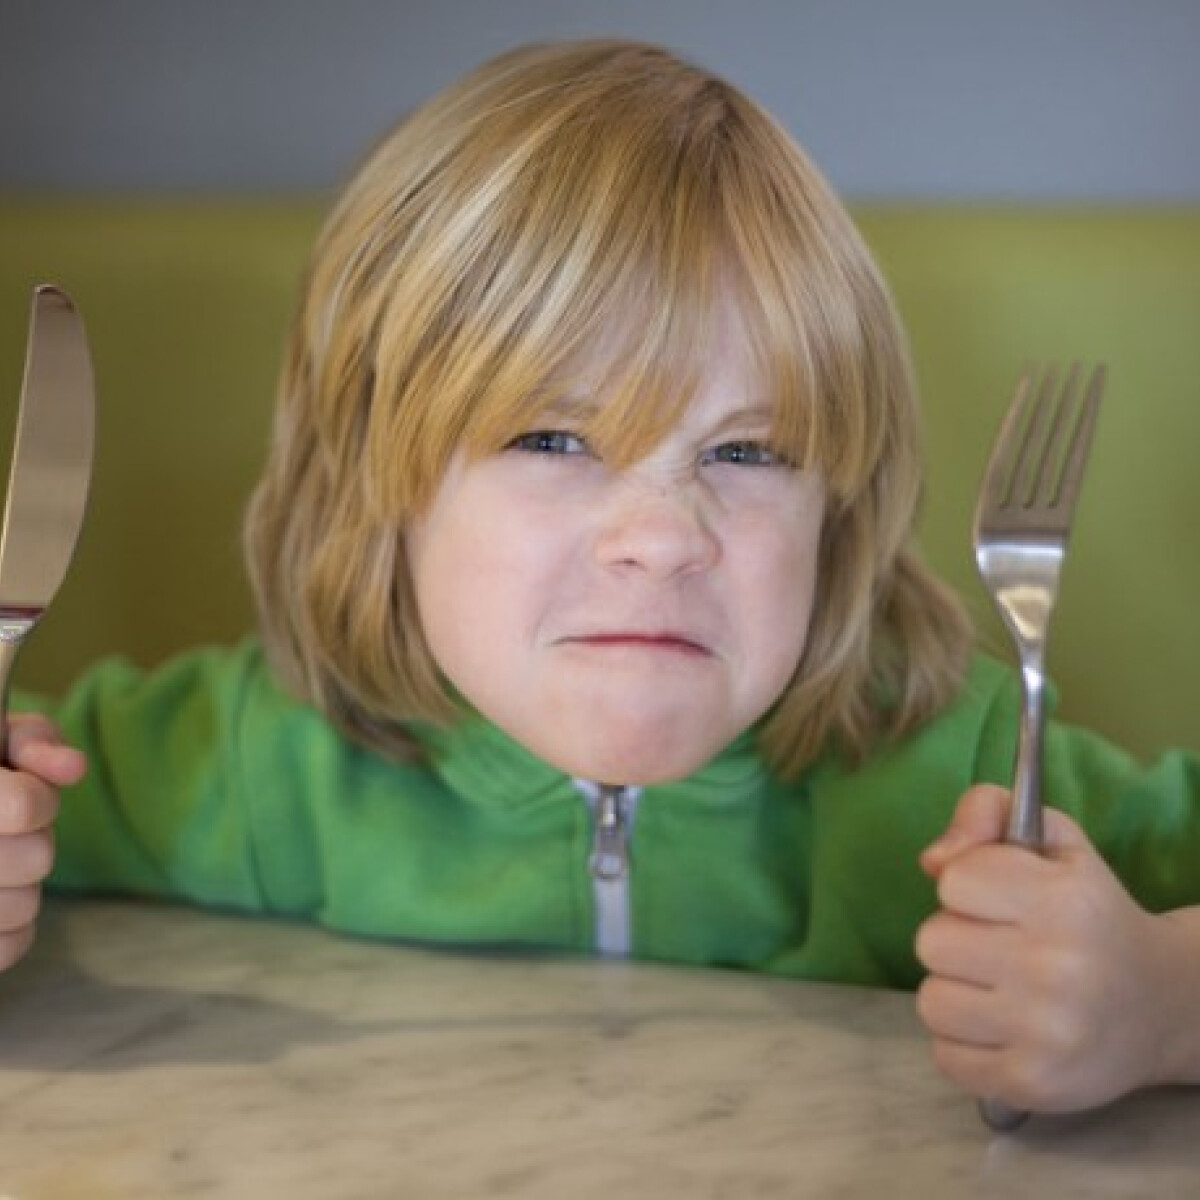 Egy amerikai étterem kitiltotta a kisgyerekes vendégeket. Vajon igazuk van?